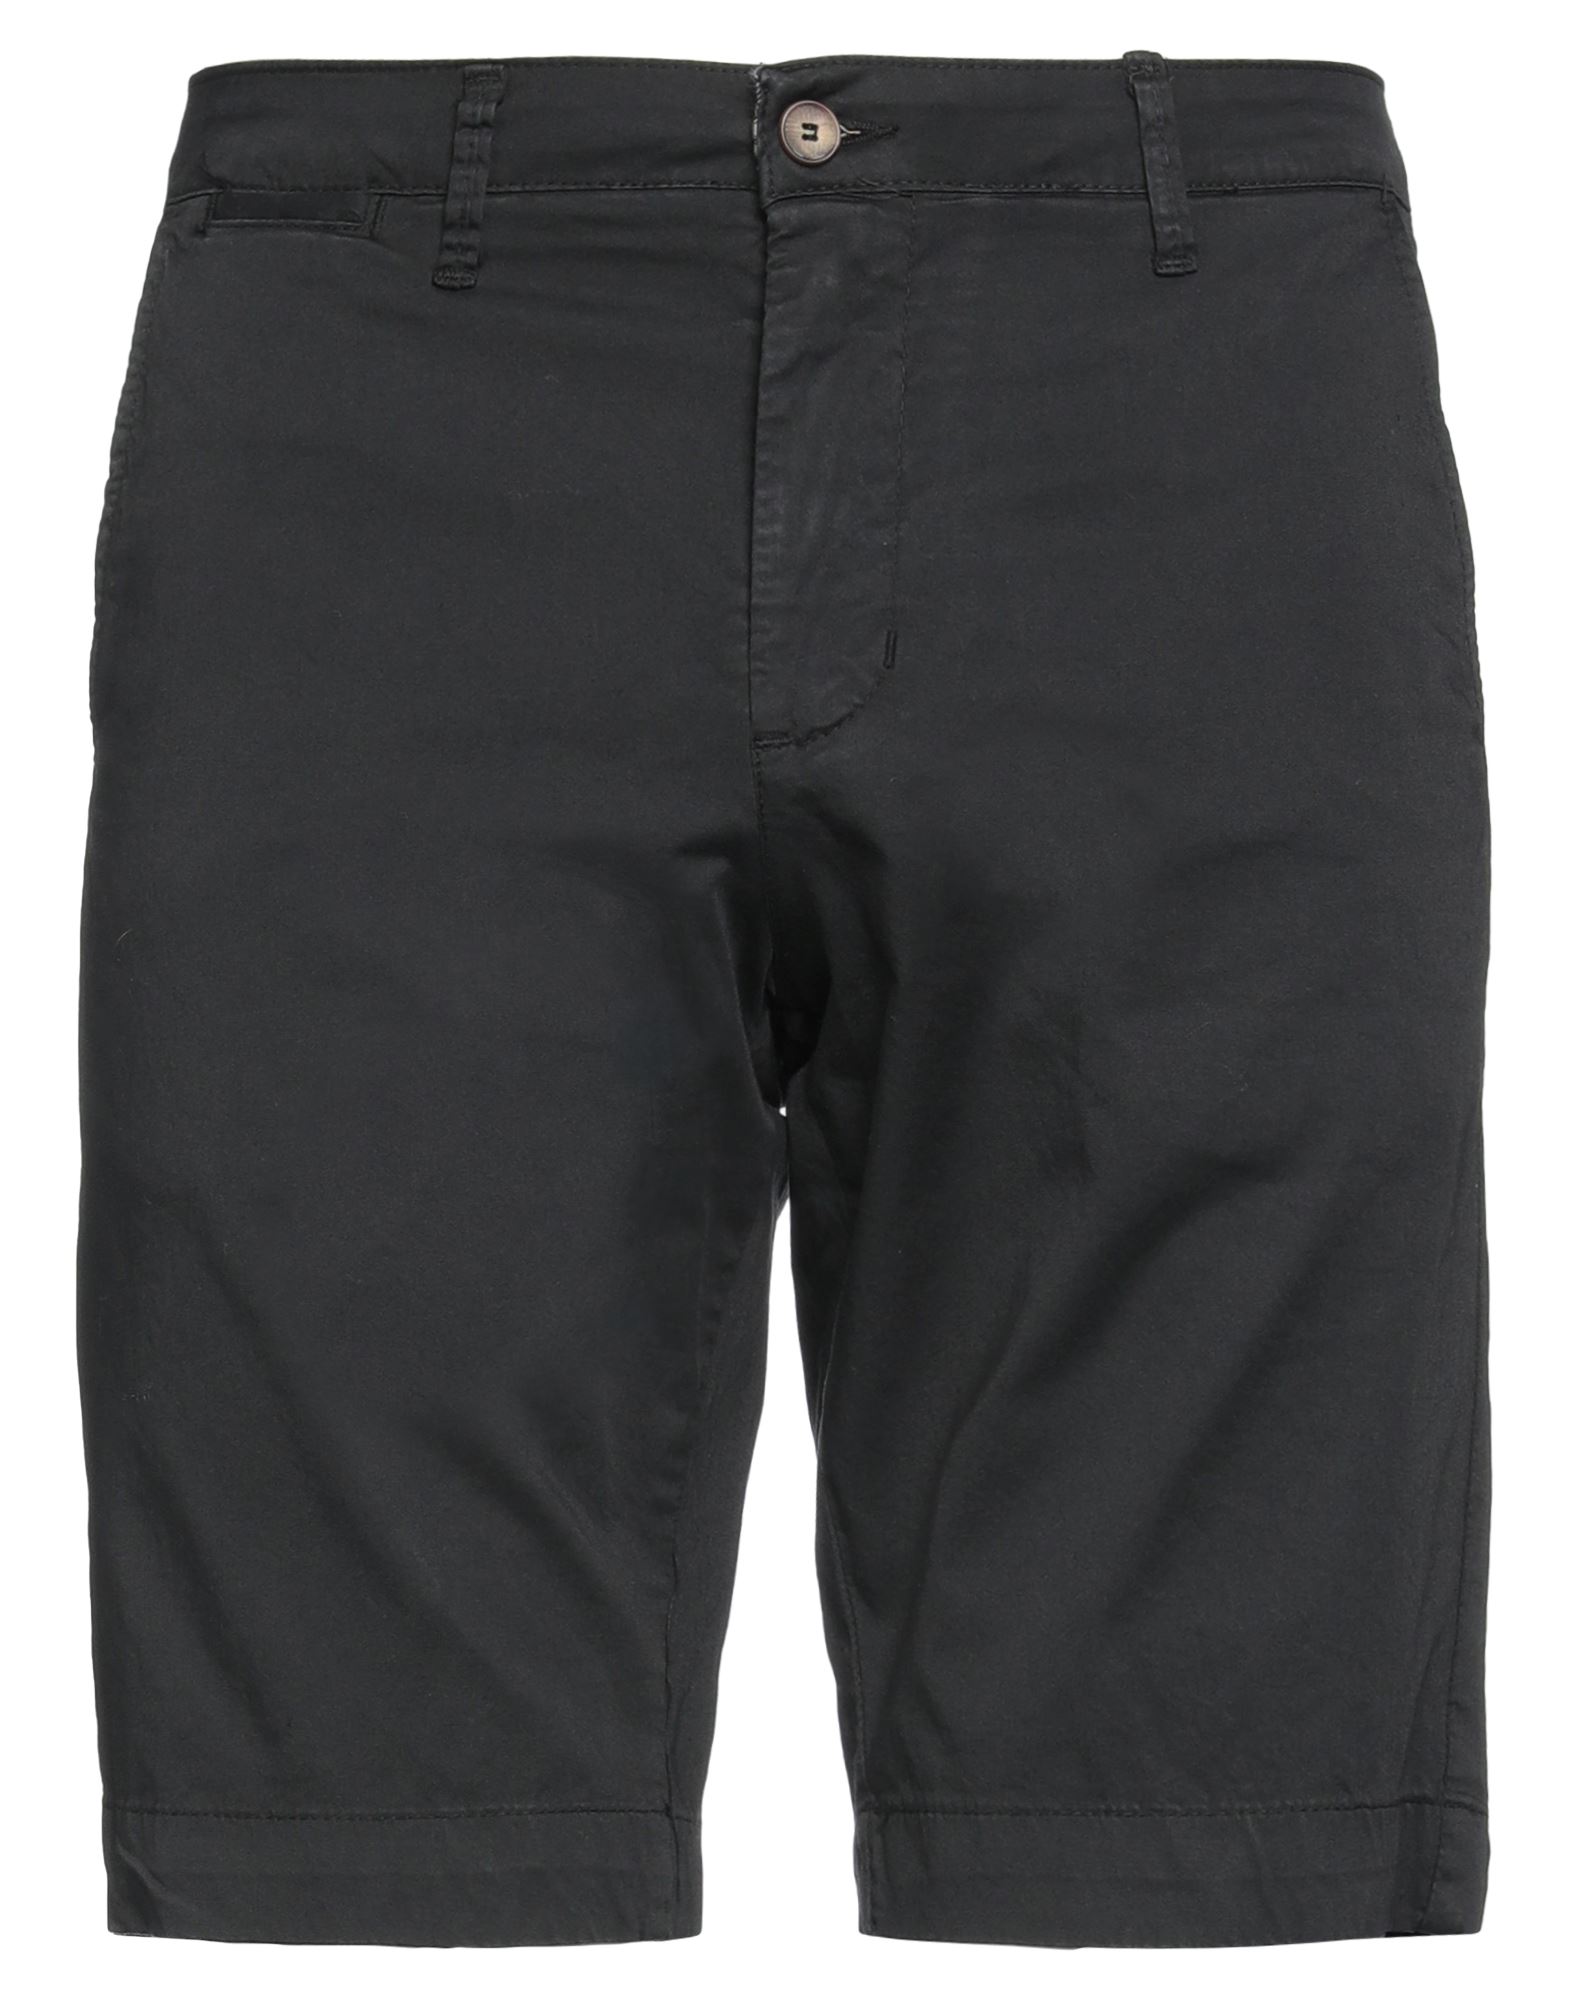 Rar Man Shorts & Bermuda Shorts Black Size 26 Cotton, Elastane